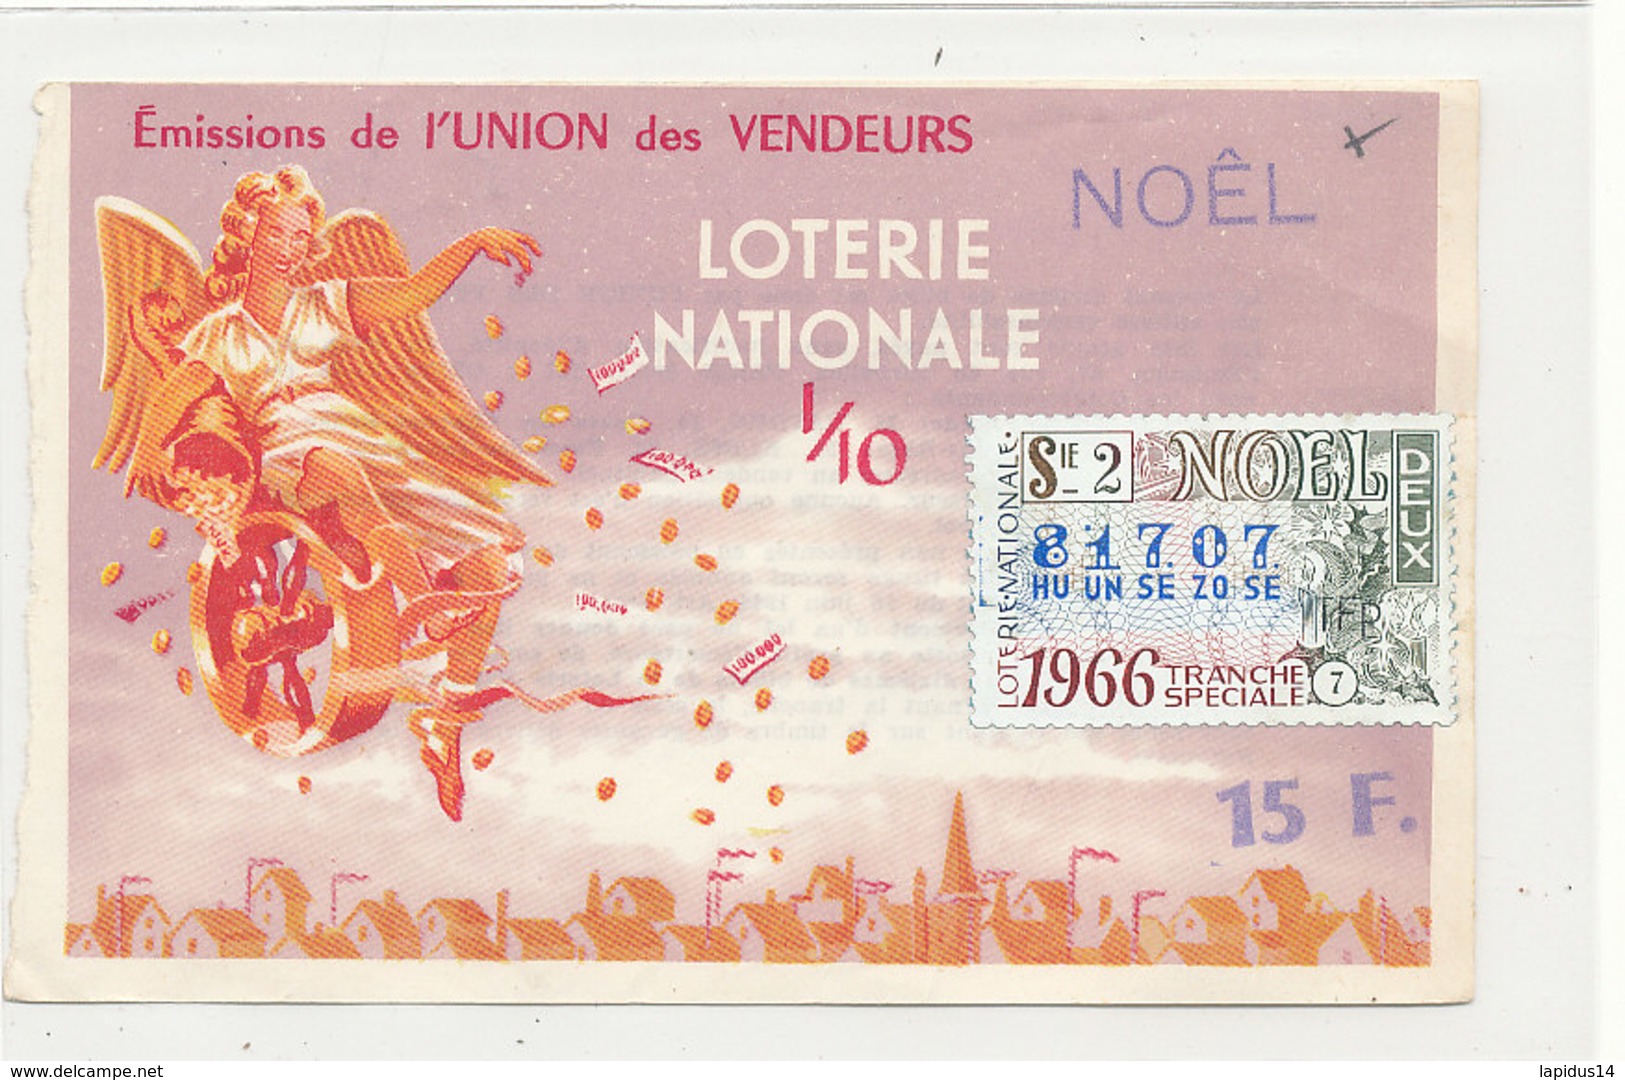 BL 162 / BILLET  LOTERIE NATIONALE   TRANCHE   DE  NOEL    UNION DES VENDEURS     1966 - Billets De Loterie